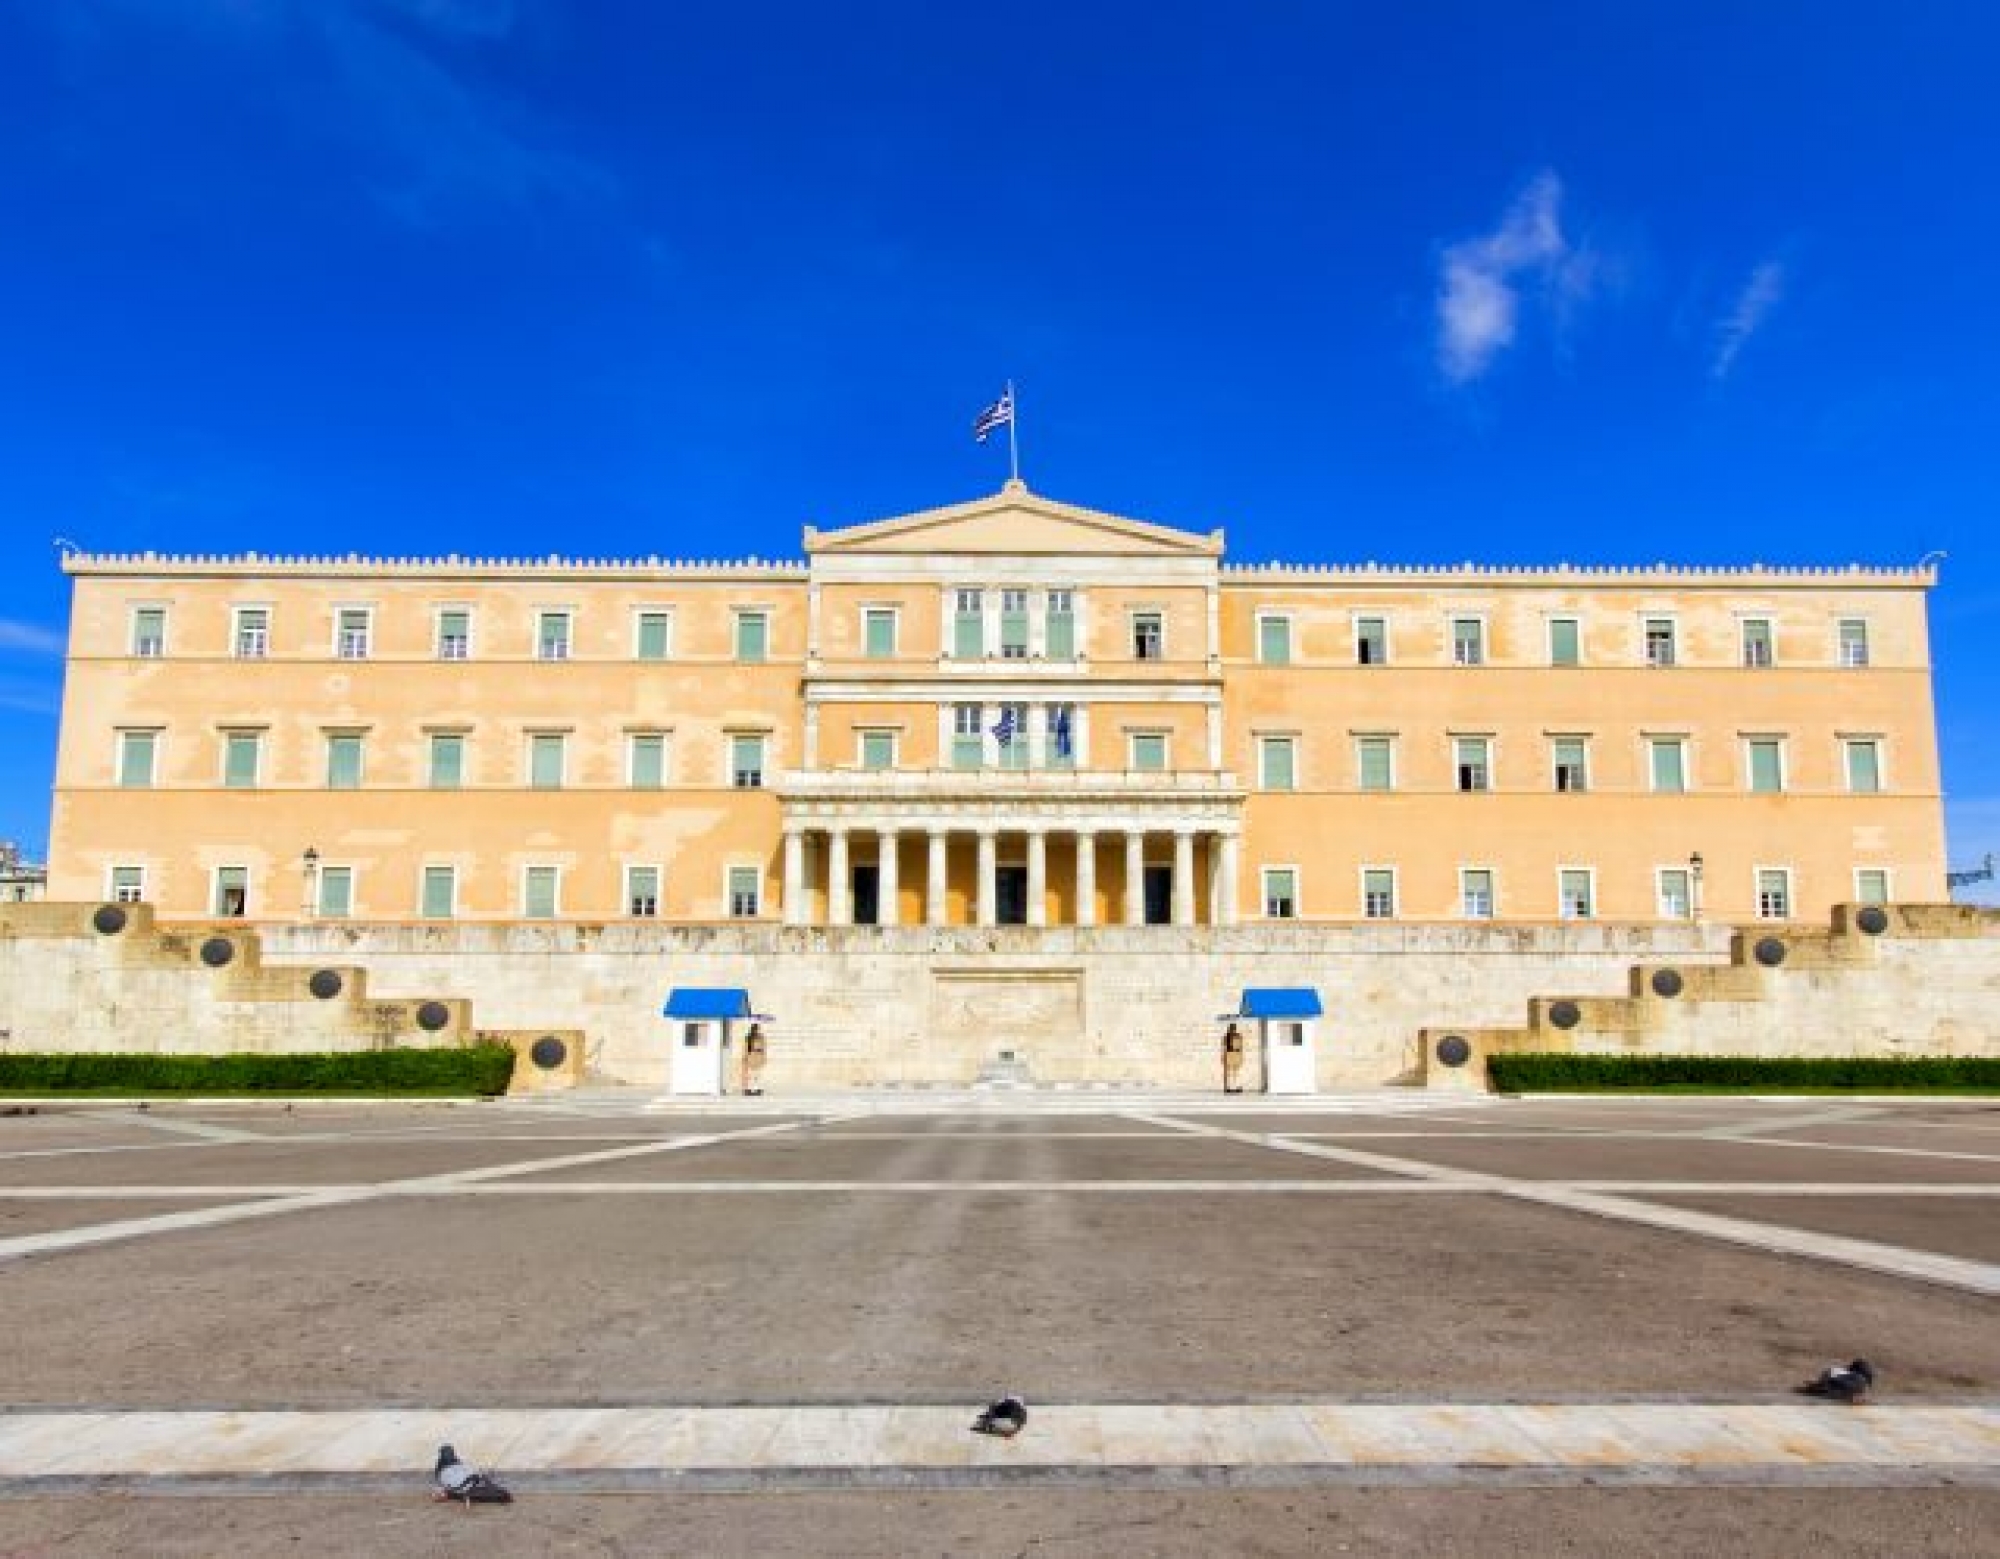 Μέγαρο Βουλής των Ελλήνων στην Αθήνα